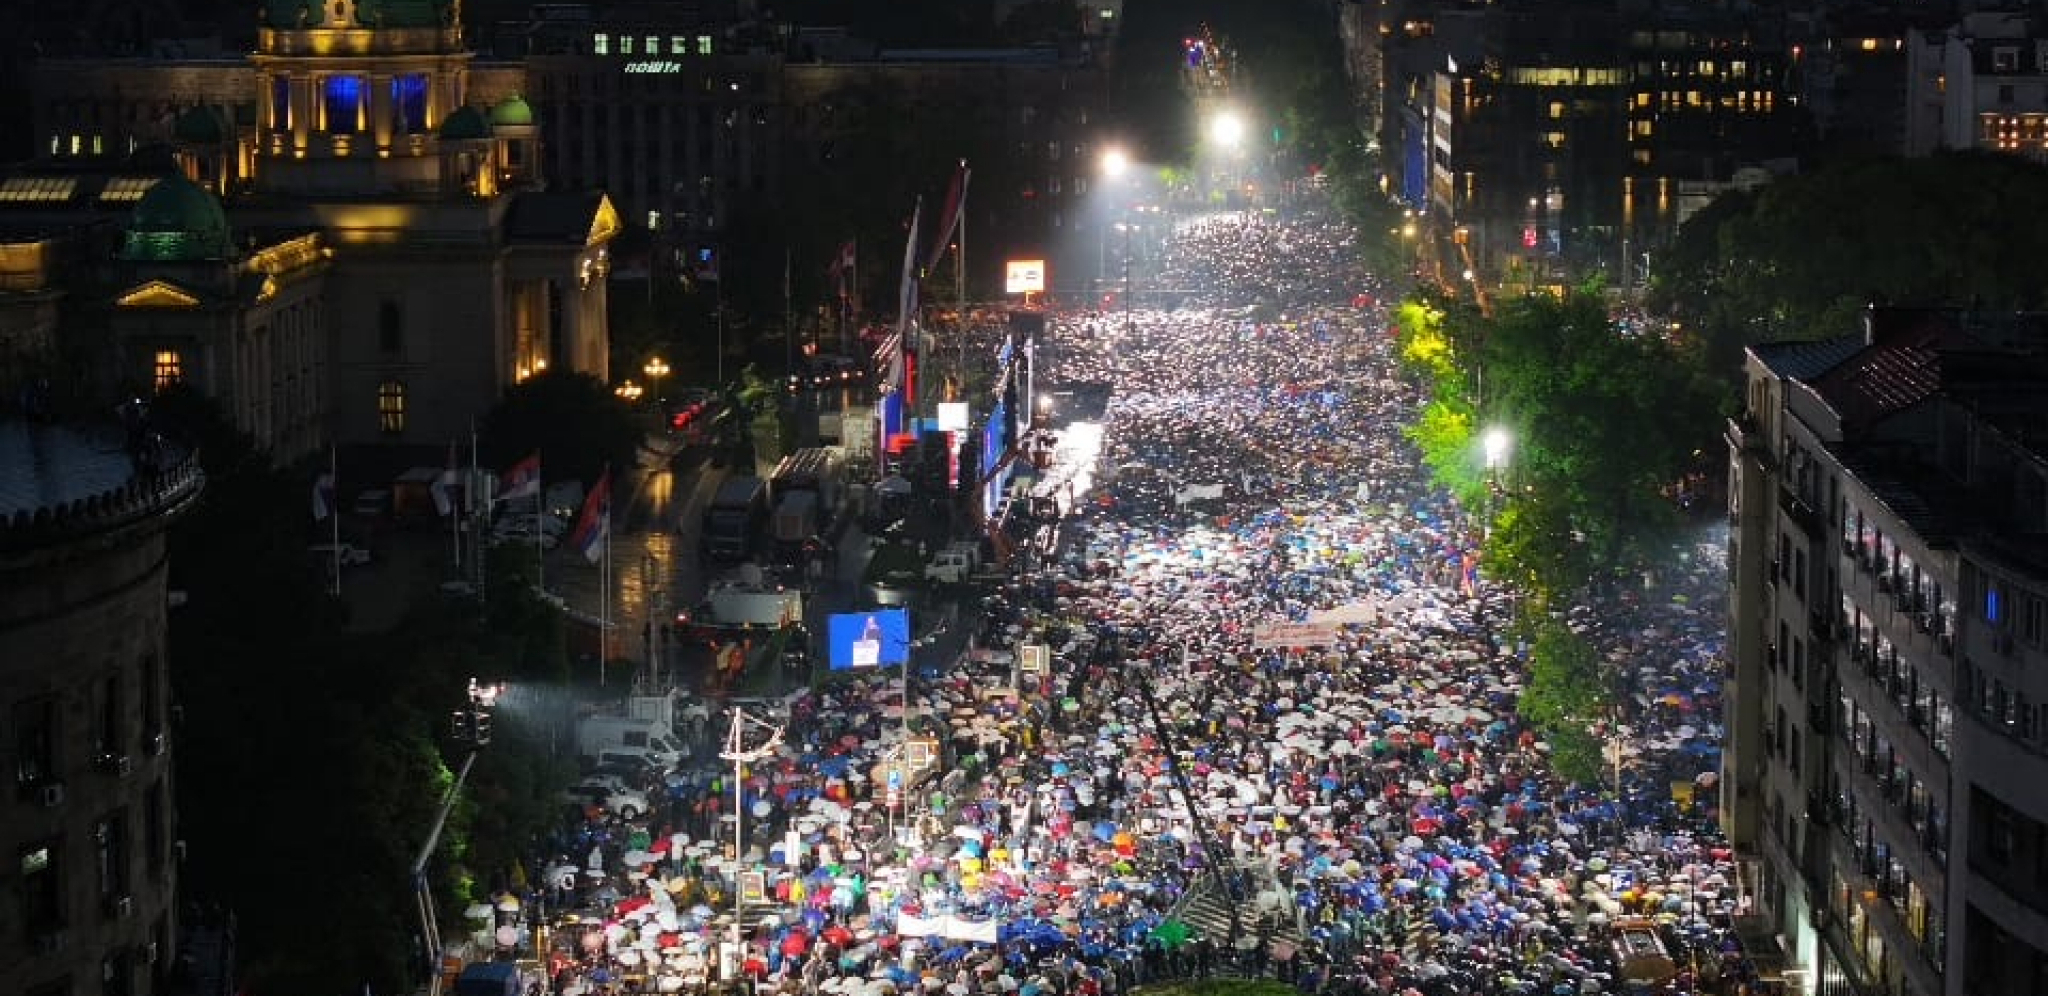 KAKO IZGLEDA 200.000 LJUDI NA JEDNOM MESTU U ISTO VREME? Veličanstvena scena u Beogradu! (FOTO)